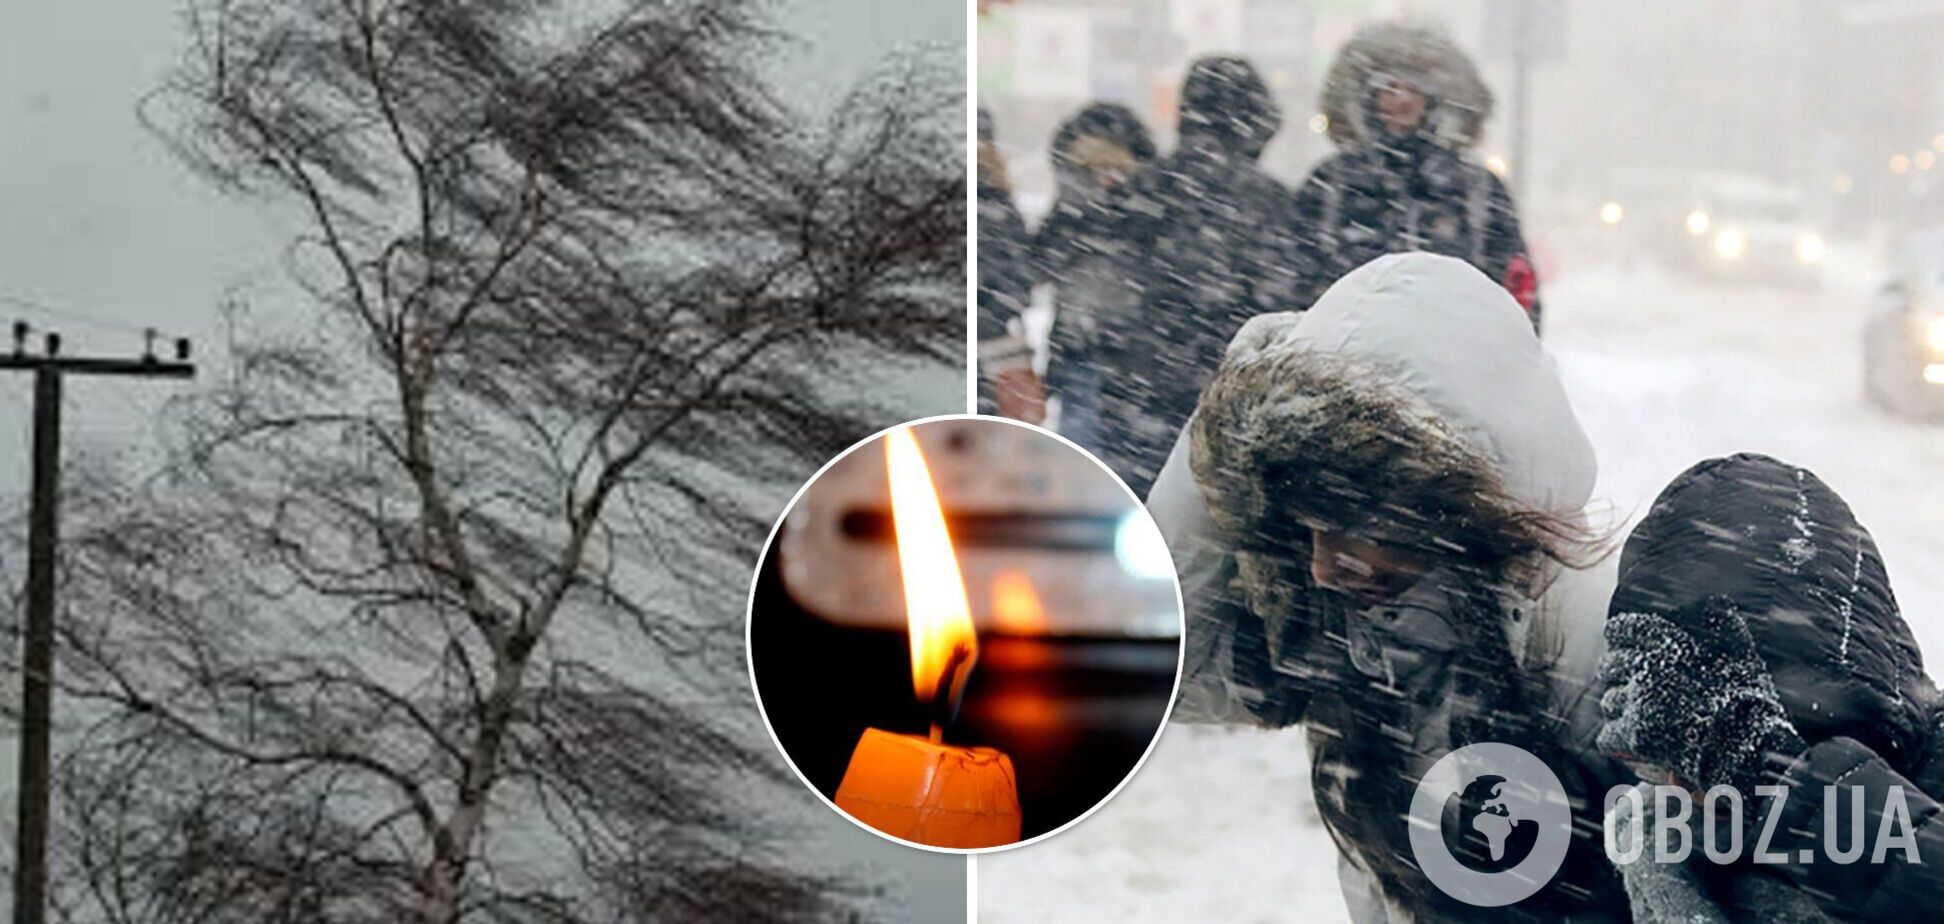 Ветер валит деревья и обрывает провода: в Украине бушует непогода. Фото и видео